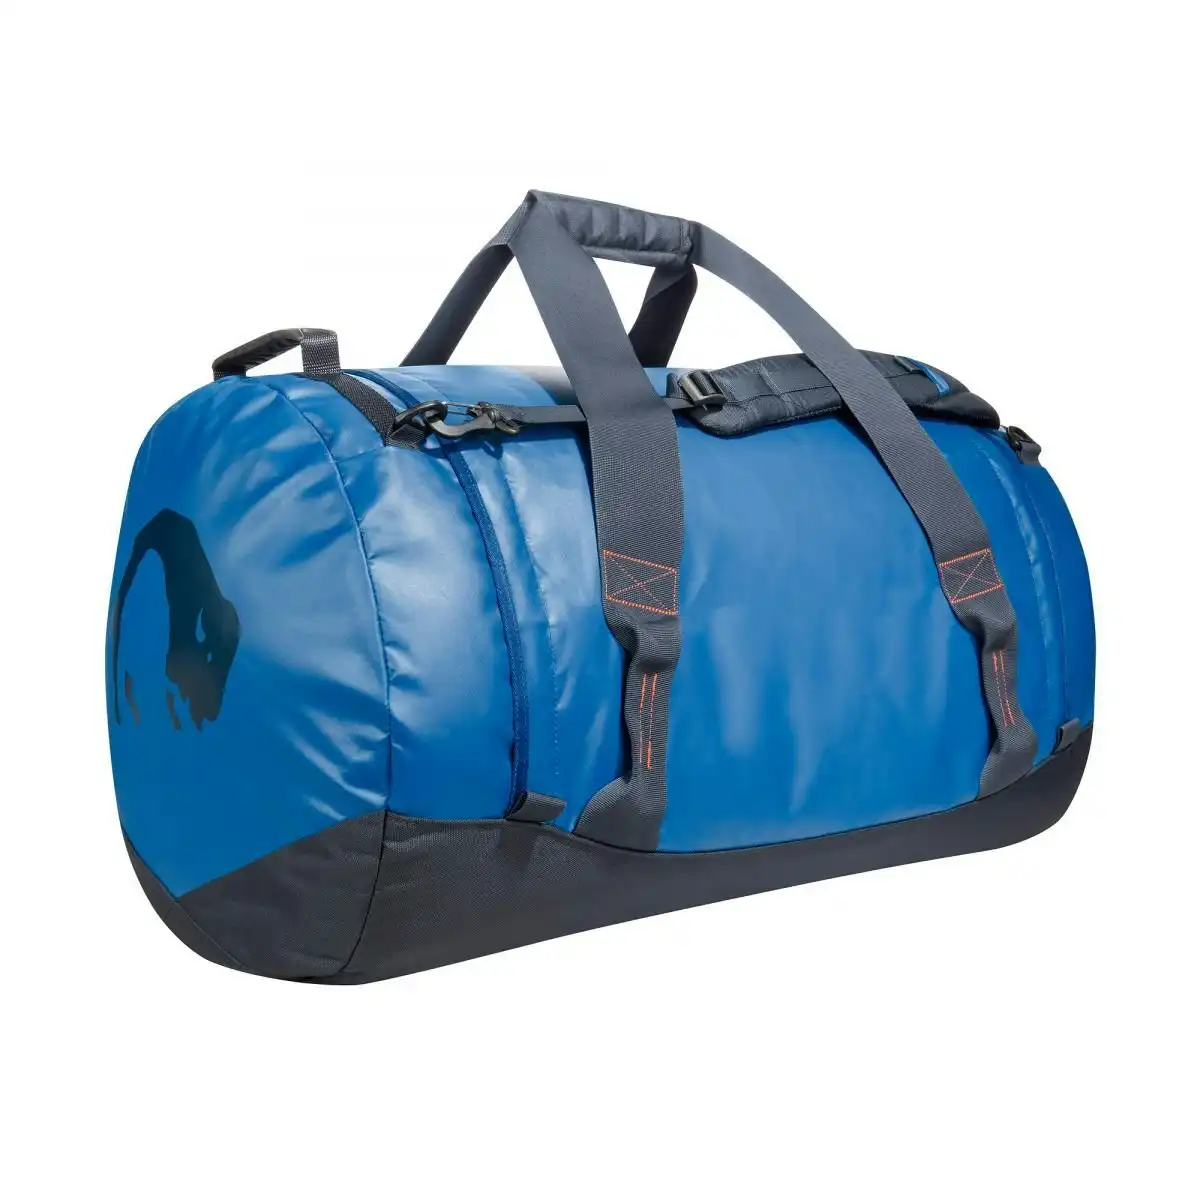 Tatonka 69x42cm Travel Barrel/Duffle Bag Luggage Storage/Organisation Large Blue